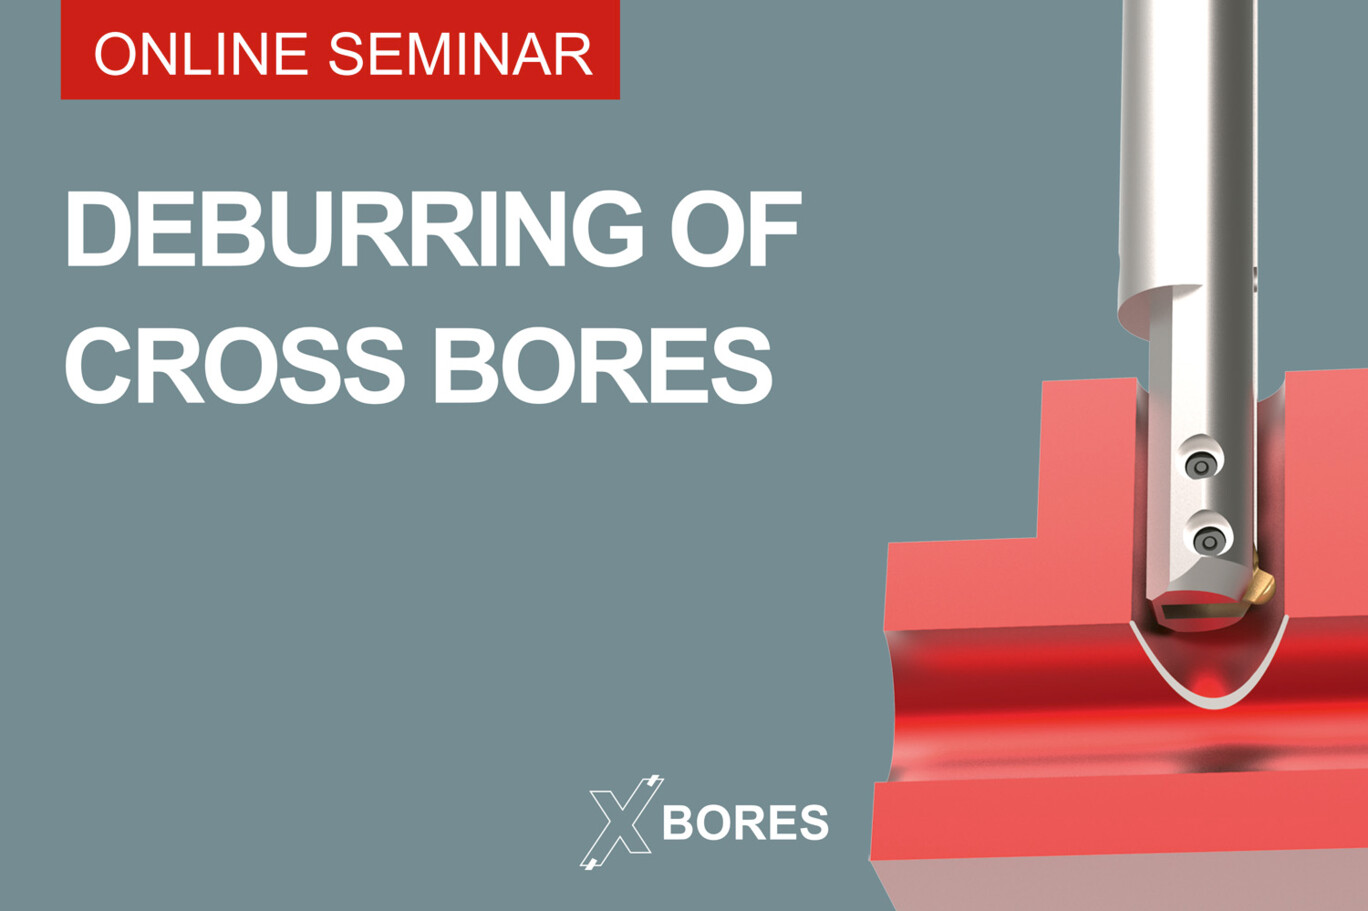 Online-Seminar-deburring-cross-bores